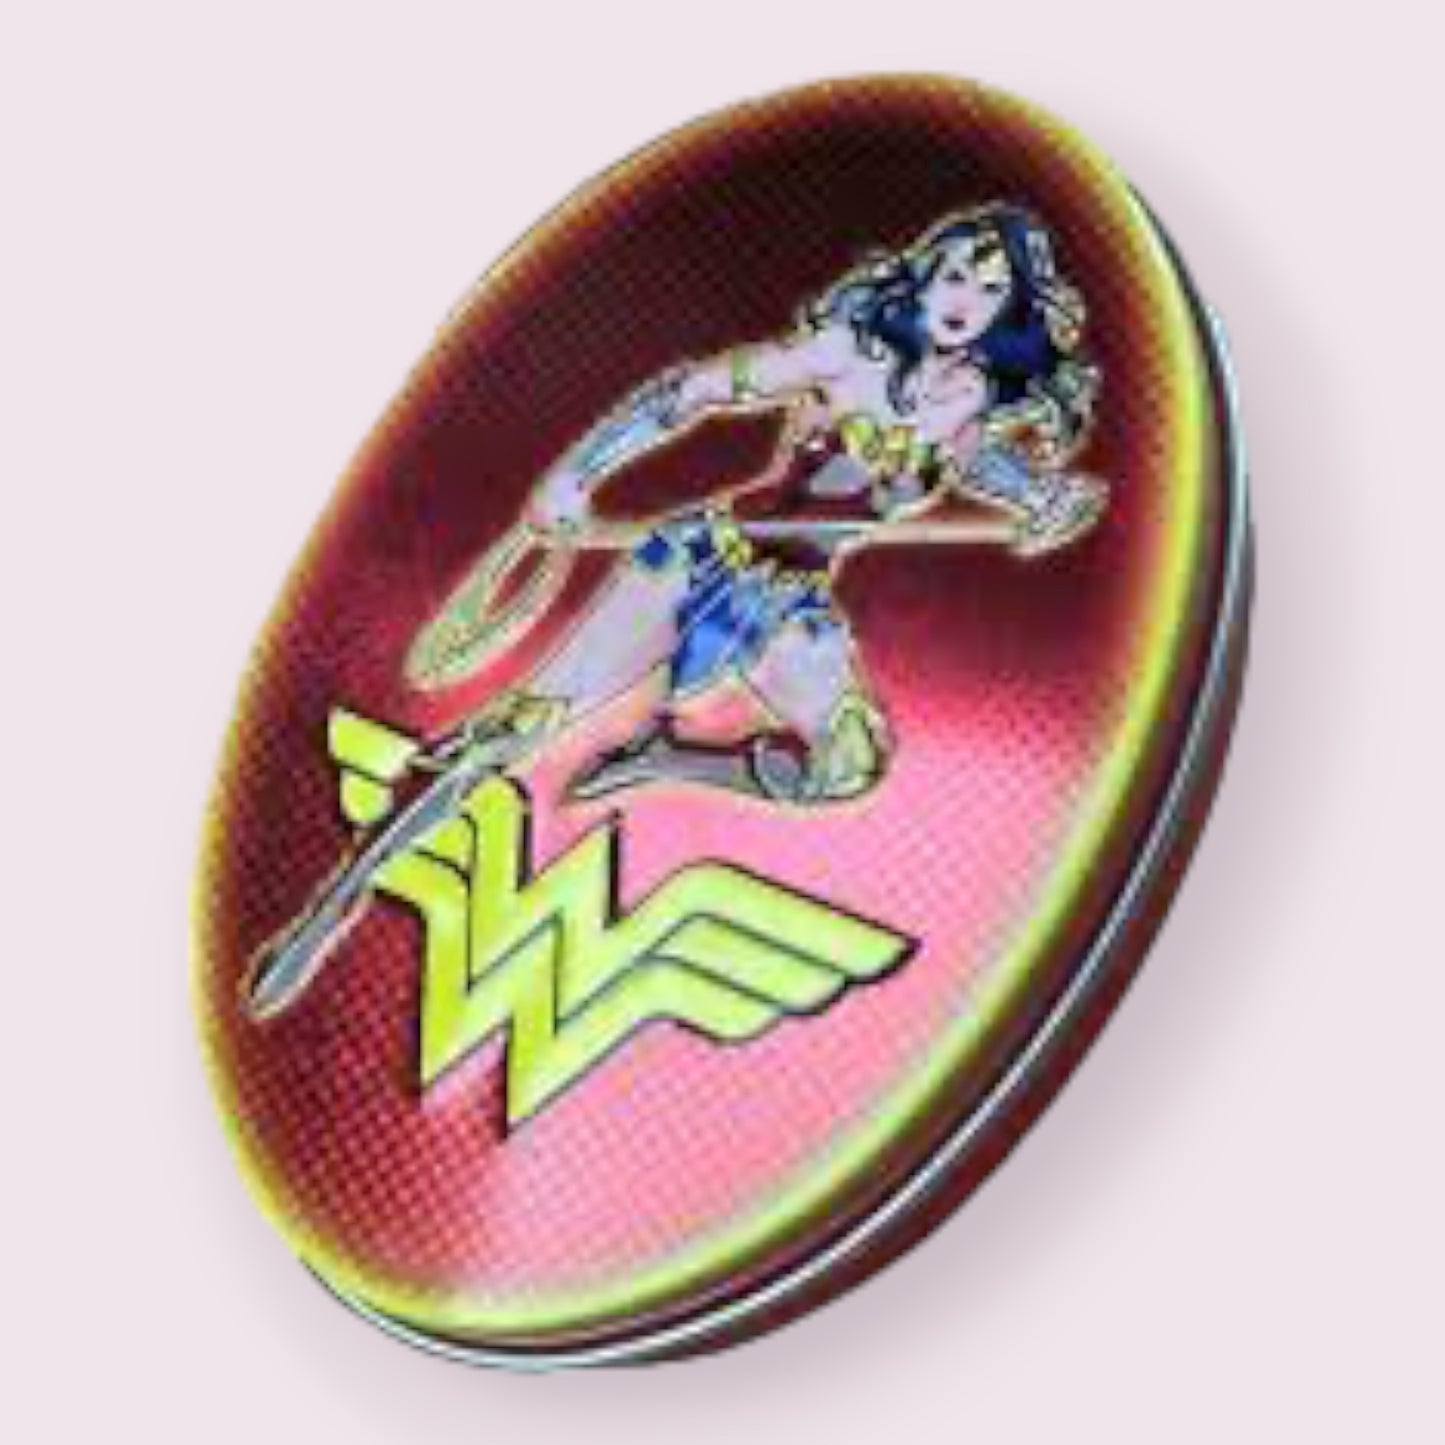 Boston America Wonder Woman Tin  Pixie Candy Shoppe   